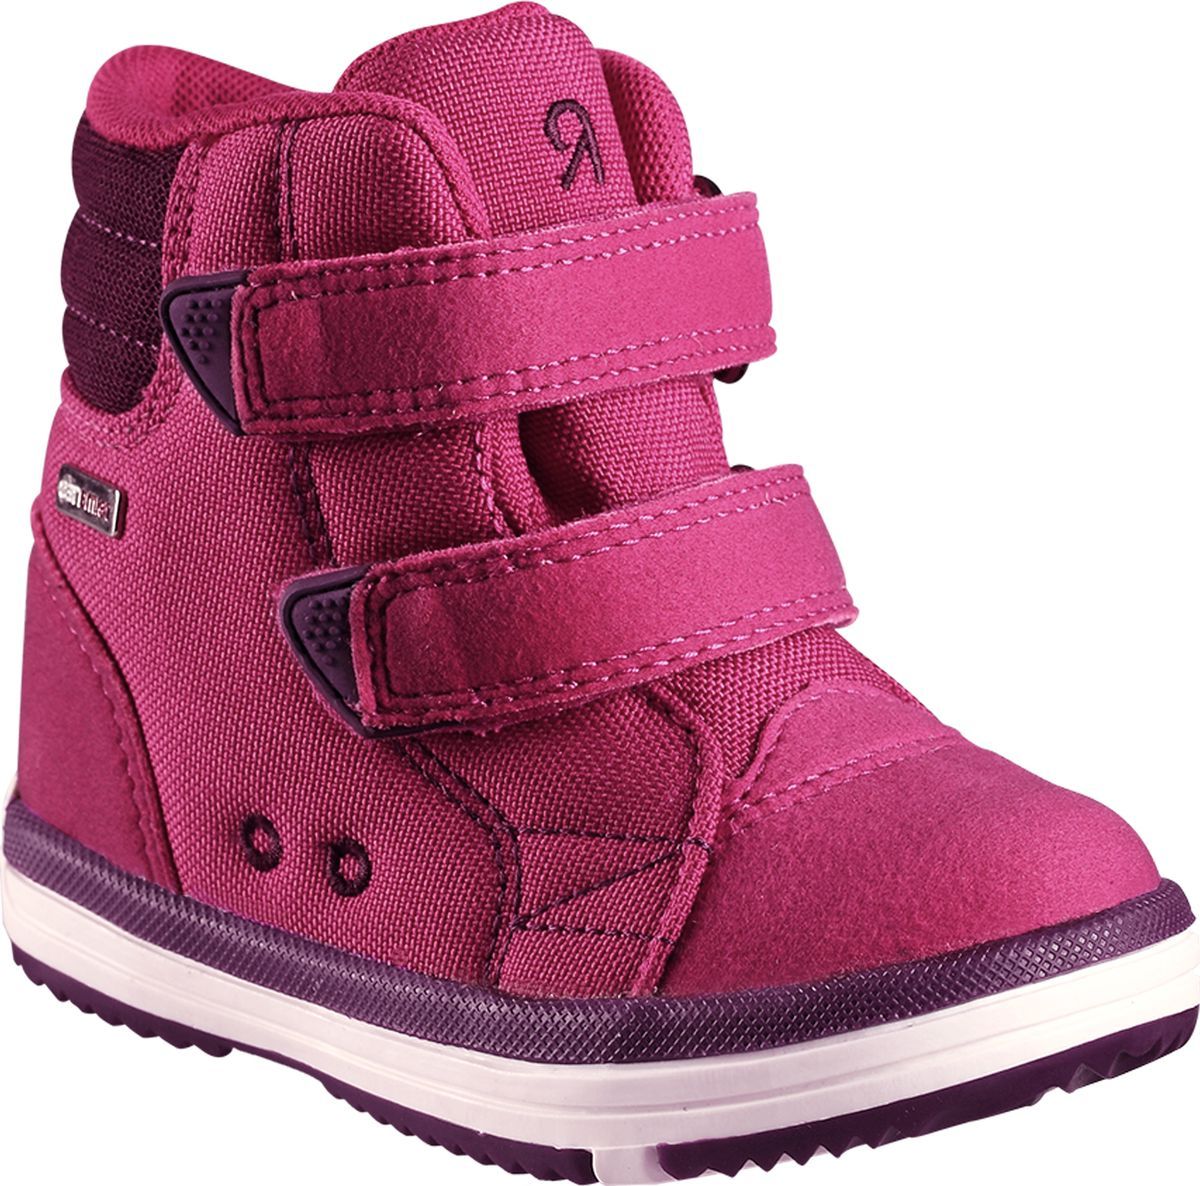 Ботинки детские Reima Patter, цвет: розовый. 5693443600. Размер 28